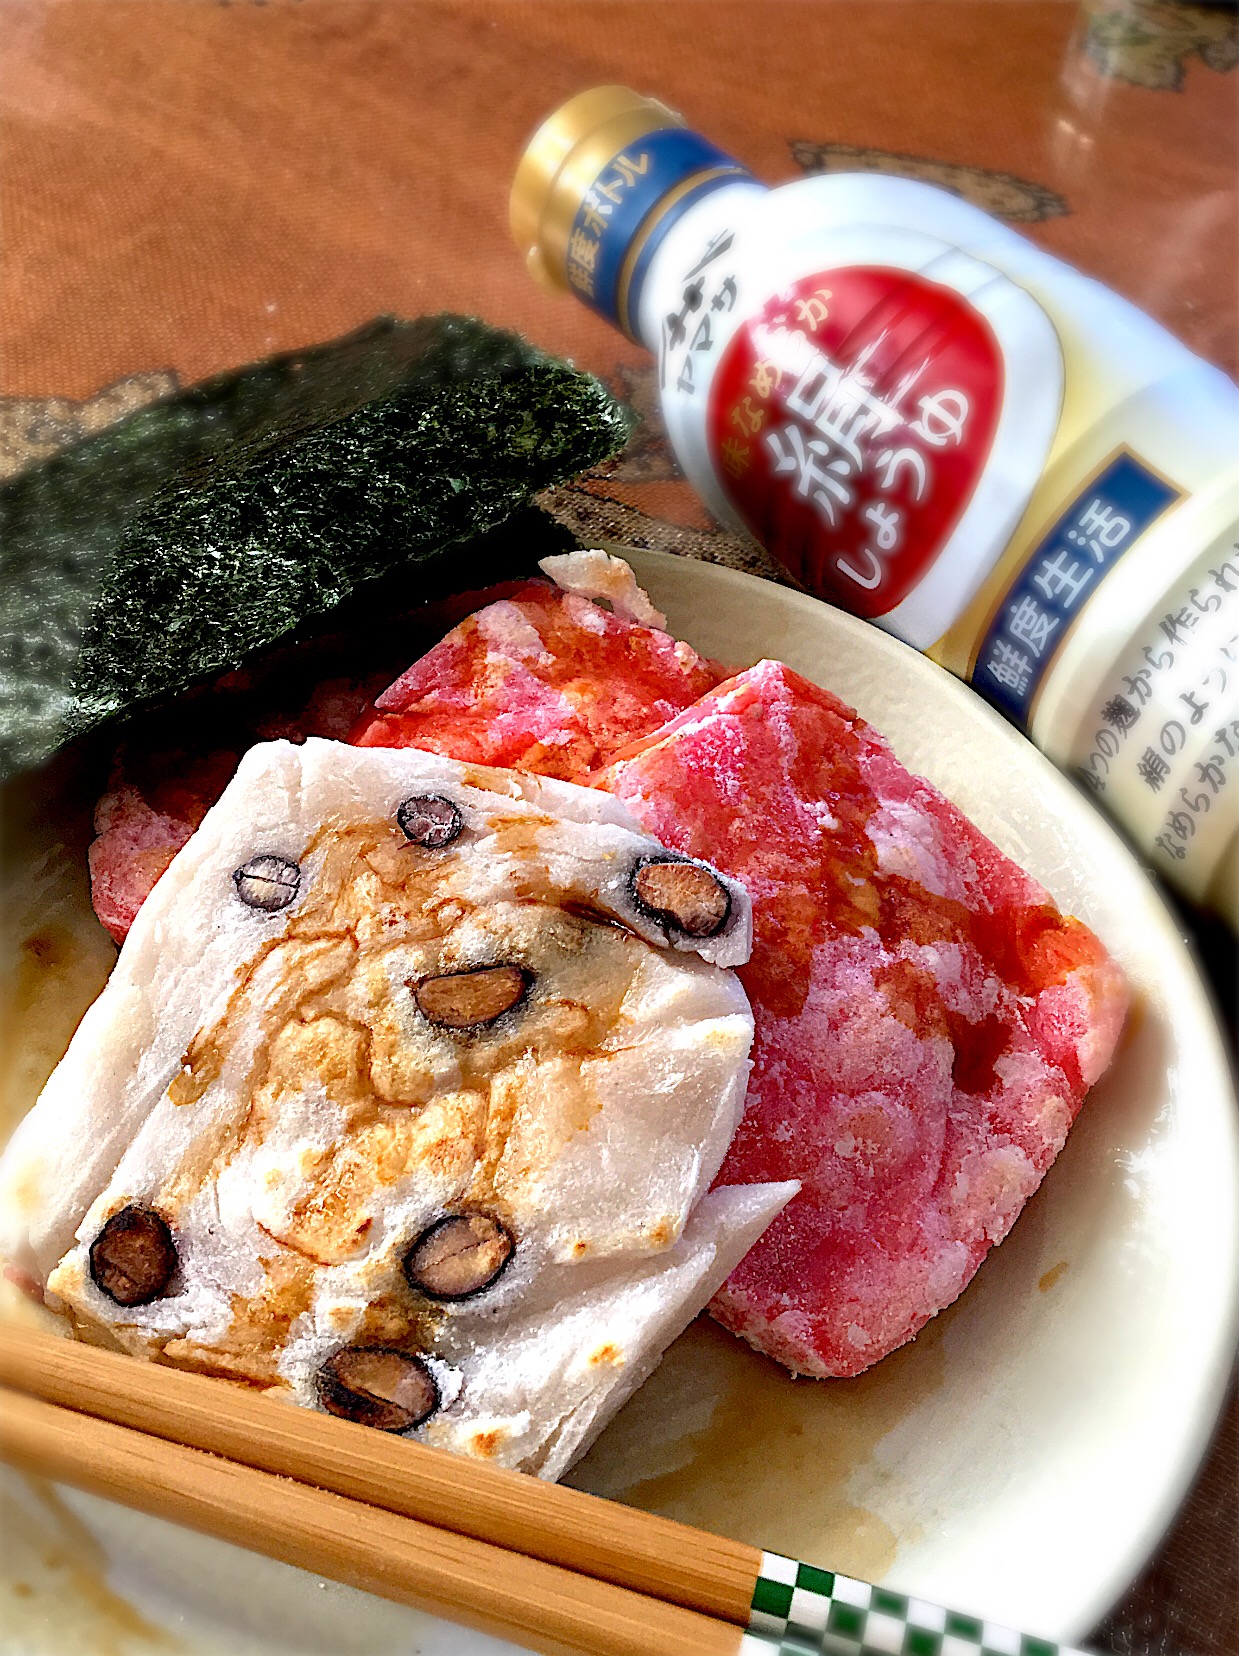 #ブレンドしょうゆグランプリ2018  #ヤマサ醤油味なめらか絹しょうゆ 


絹しょうゆ&砂糖でブレンド。磯辺餅?